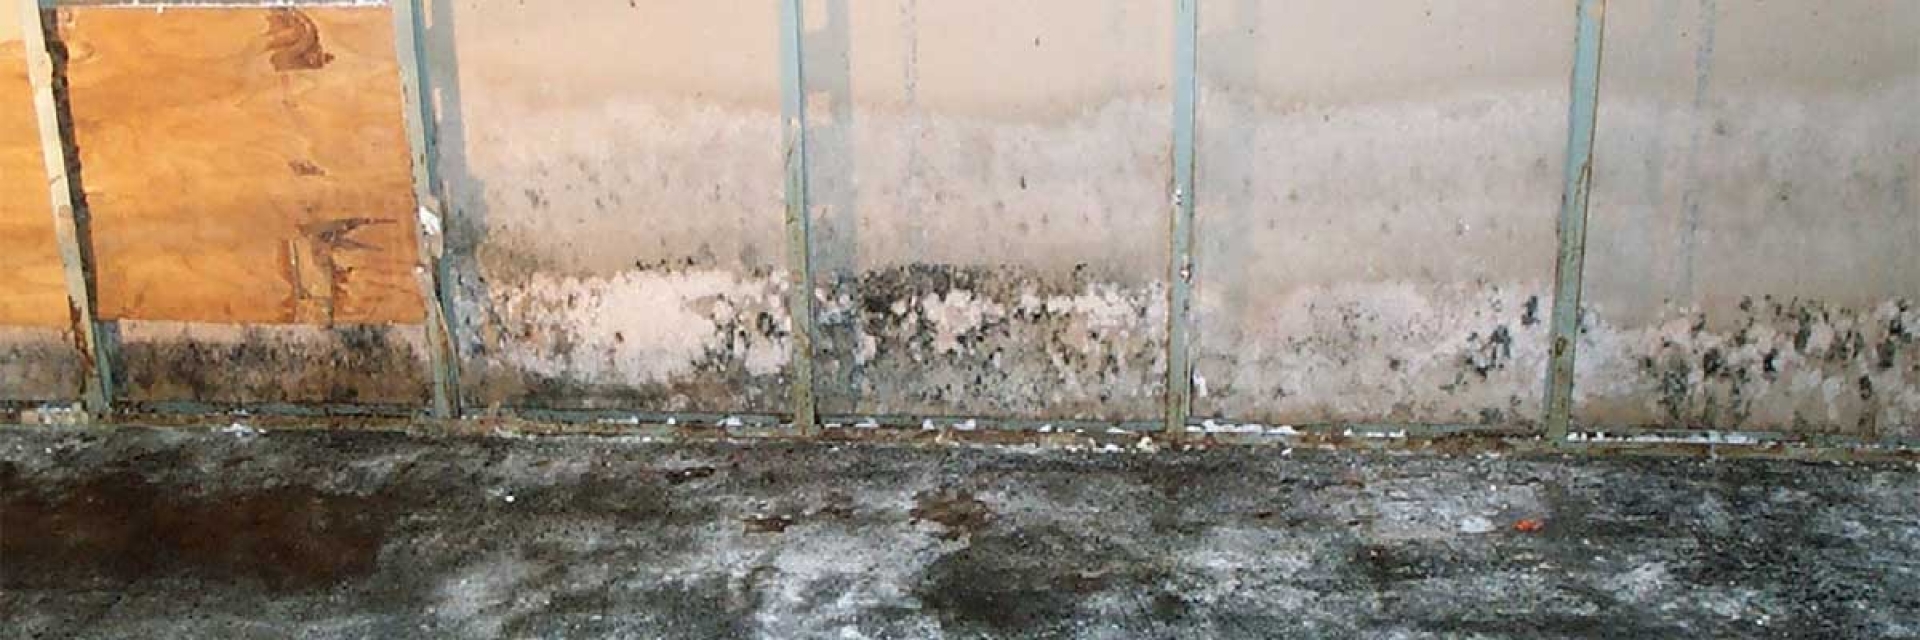 mold-on-wall